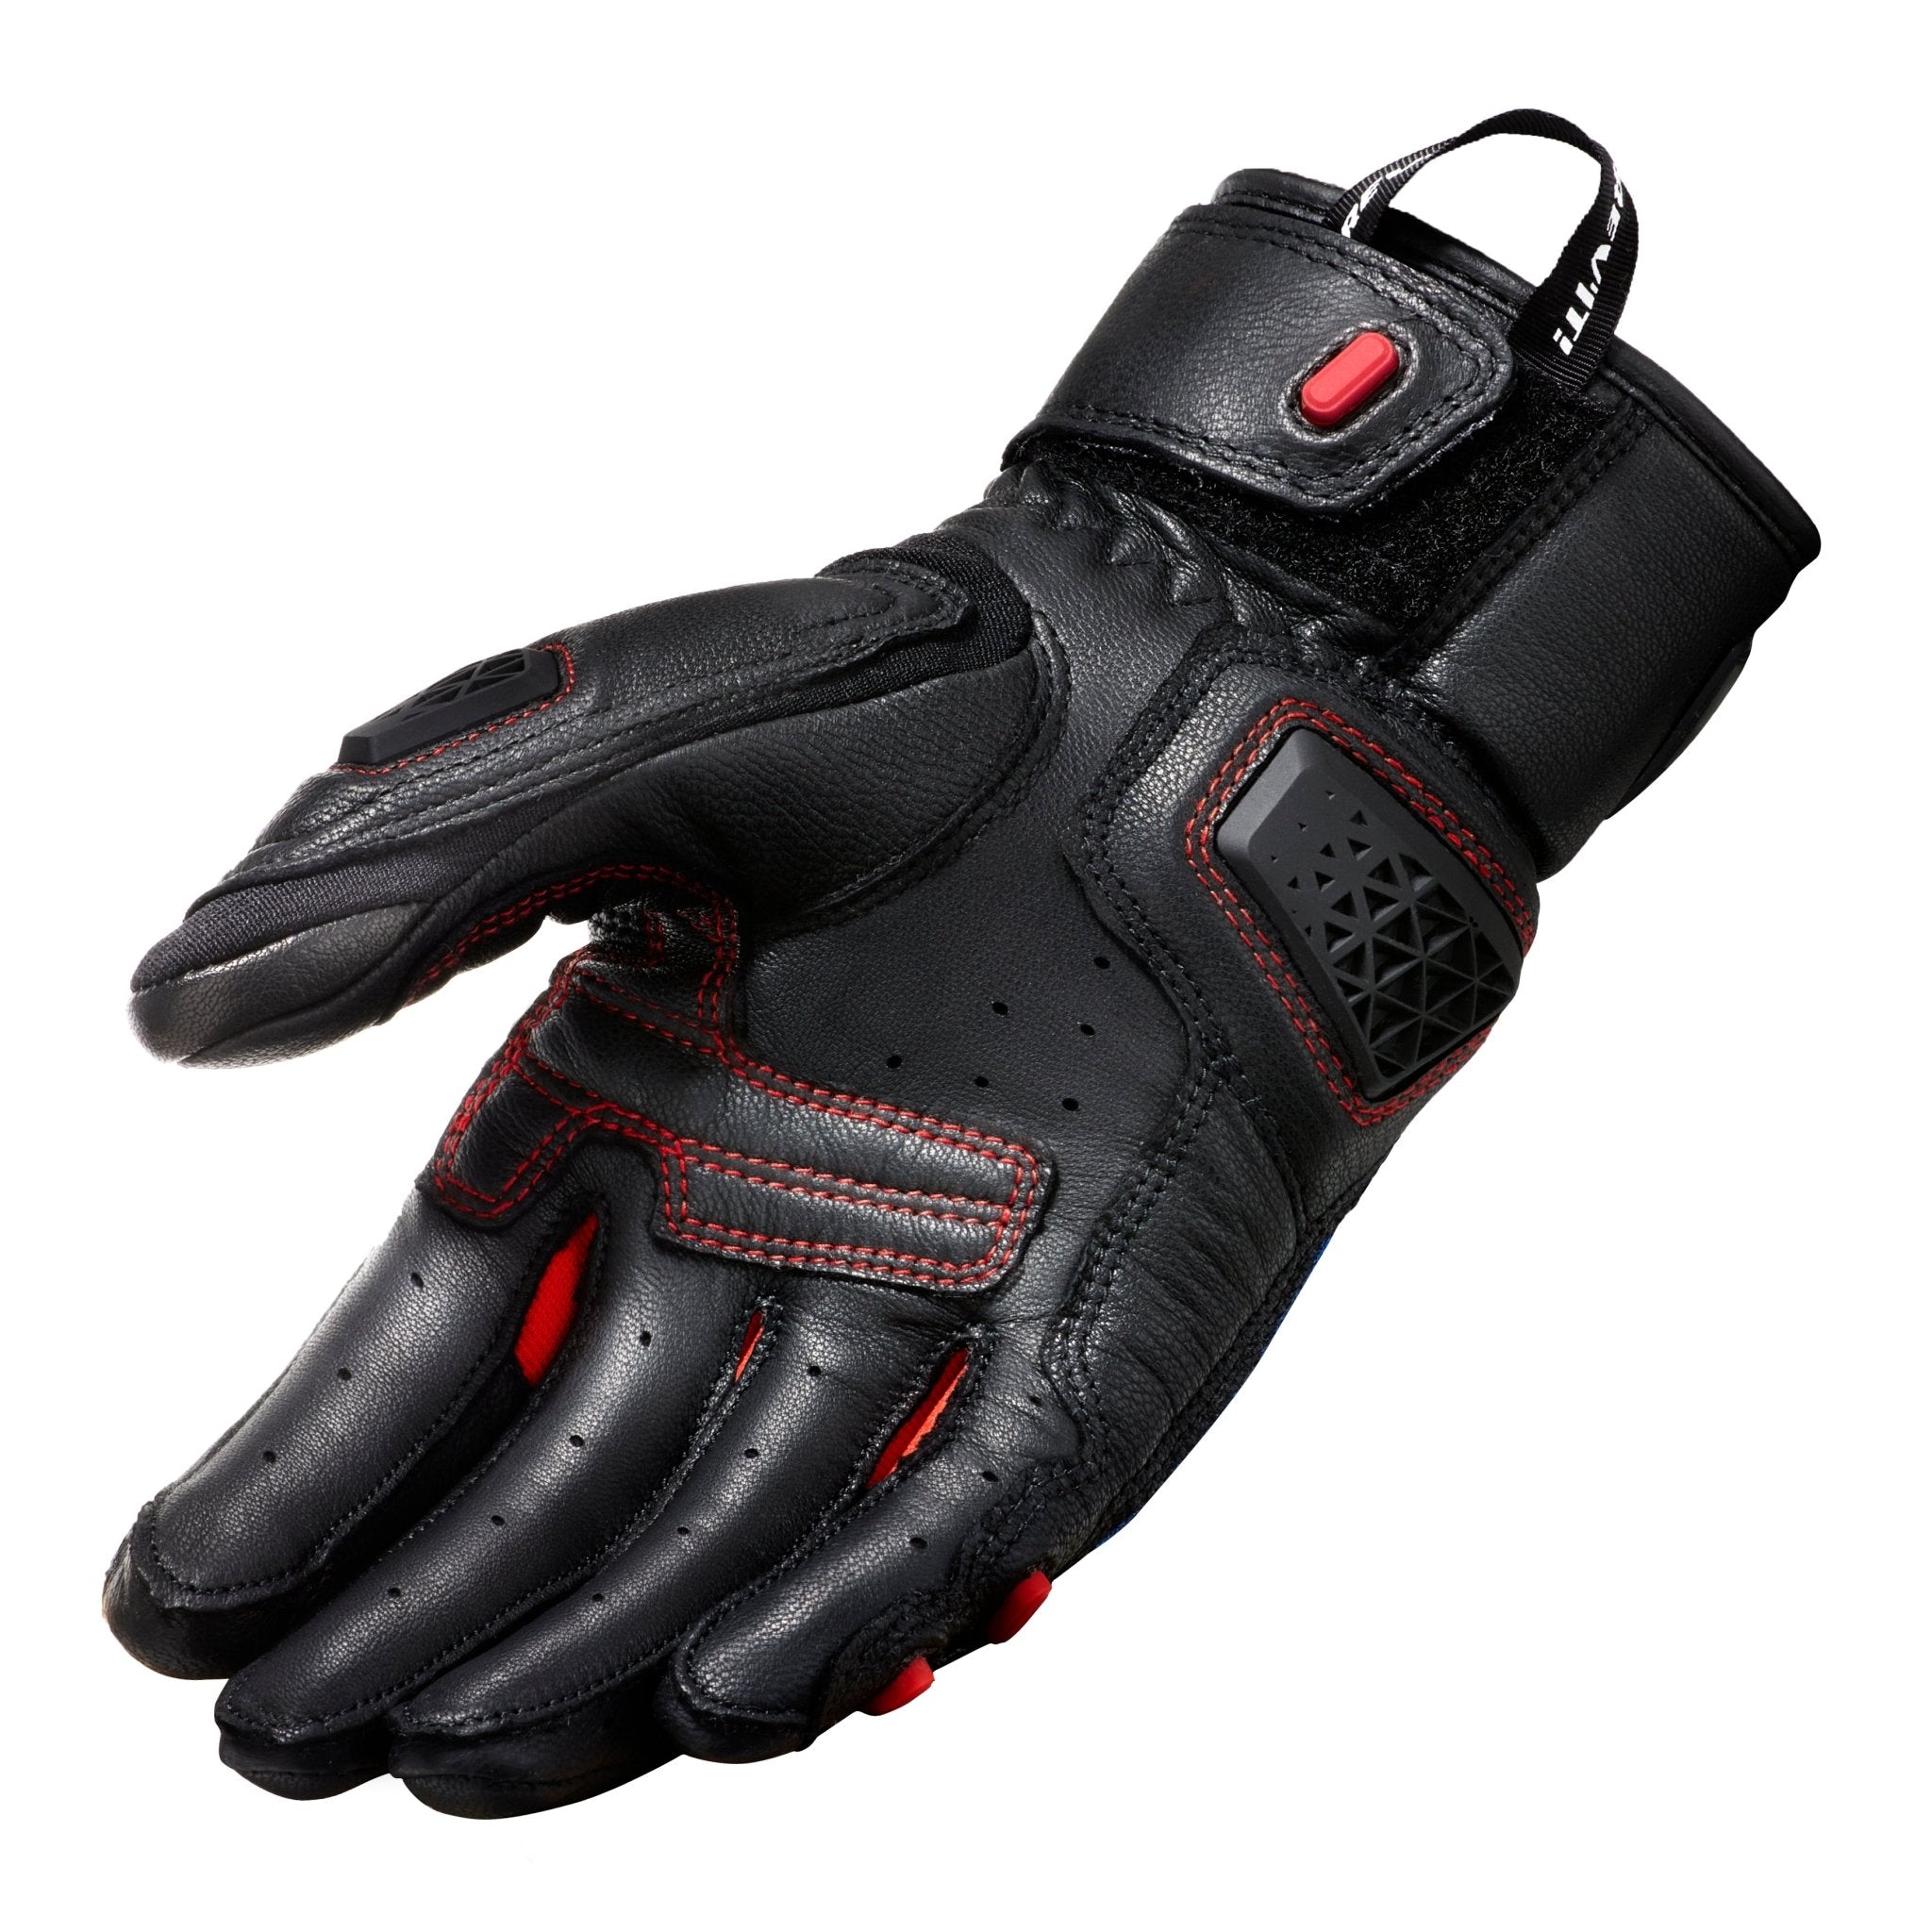 REV'IT! | Sand 4 Men's Gloves - Black/Blue - Gloves - Peak Moto